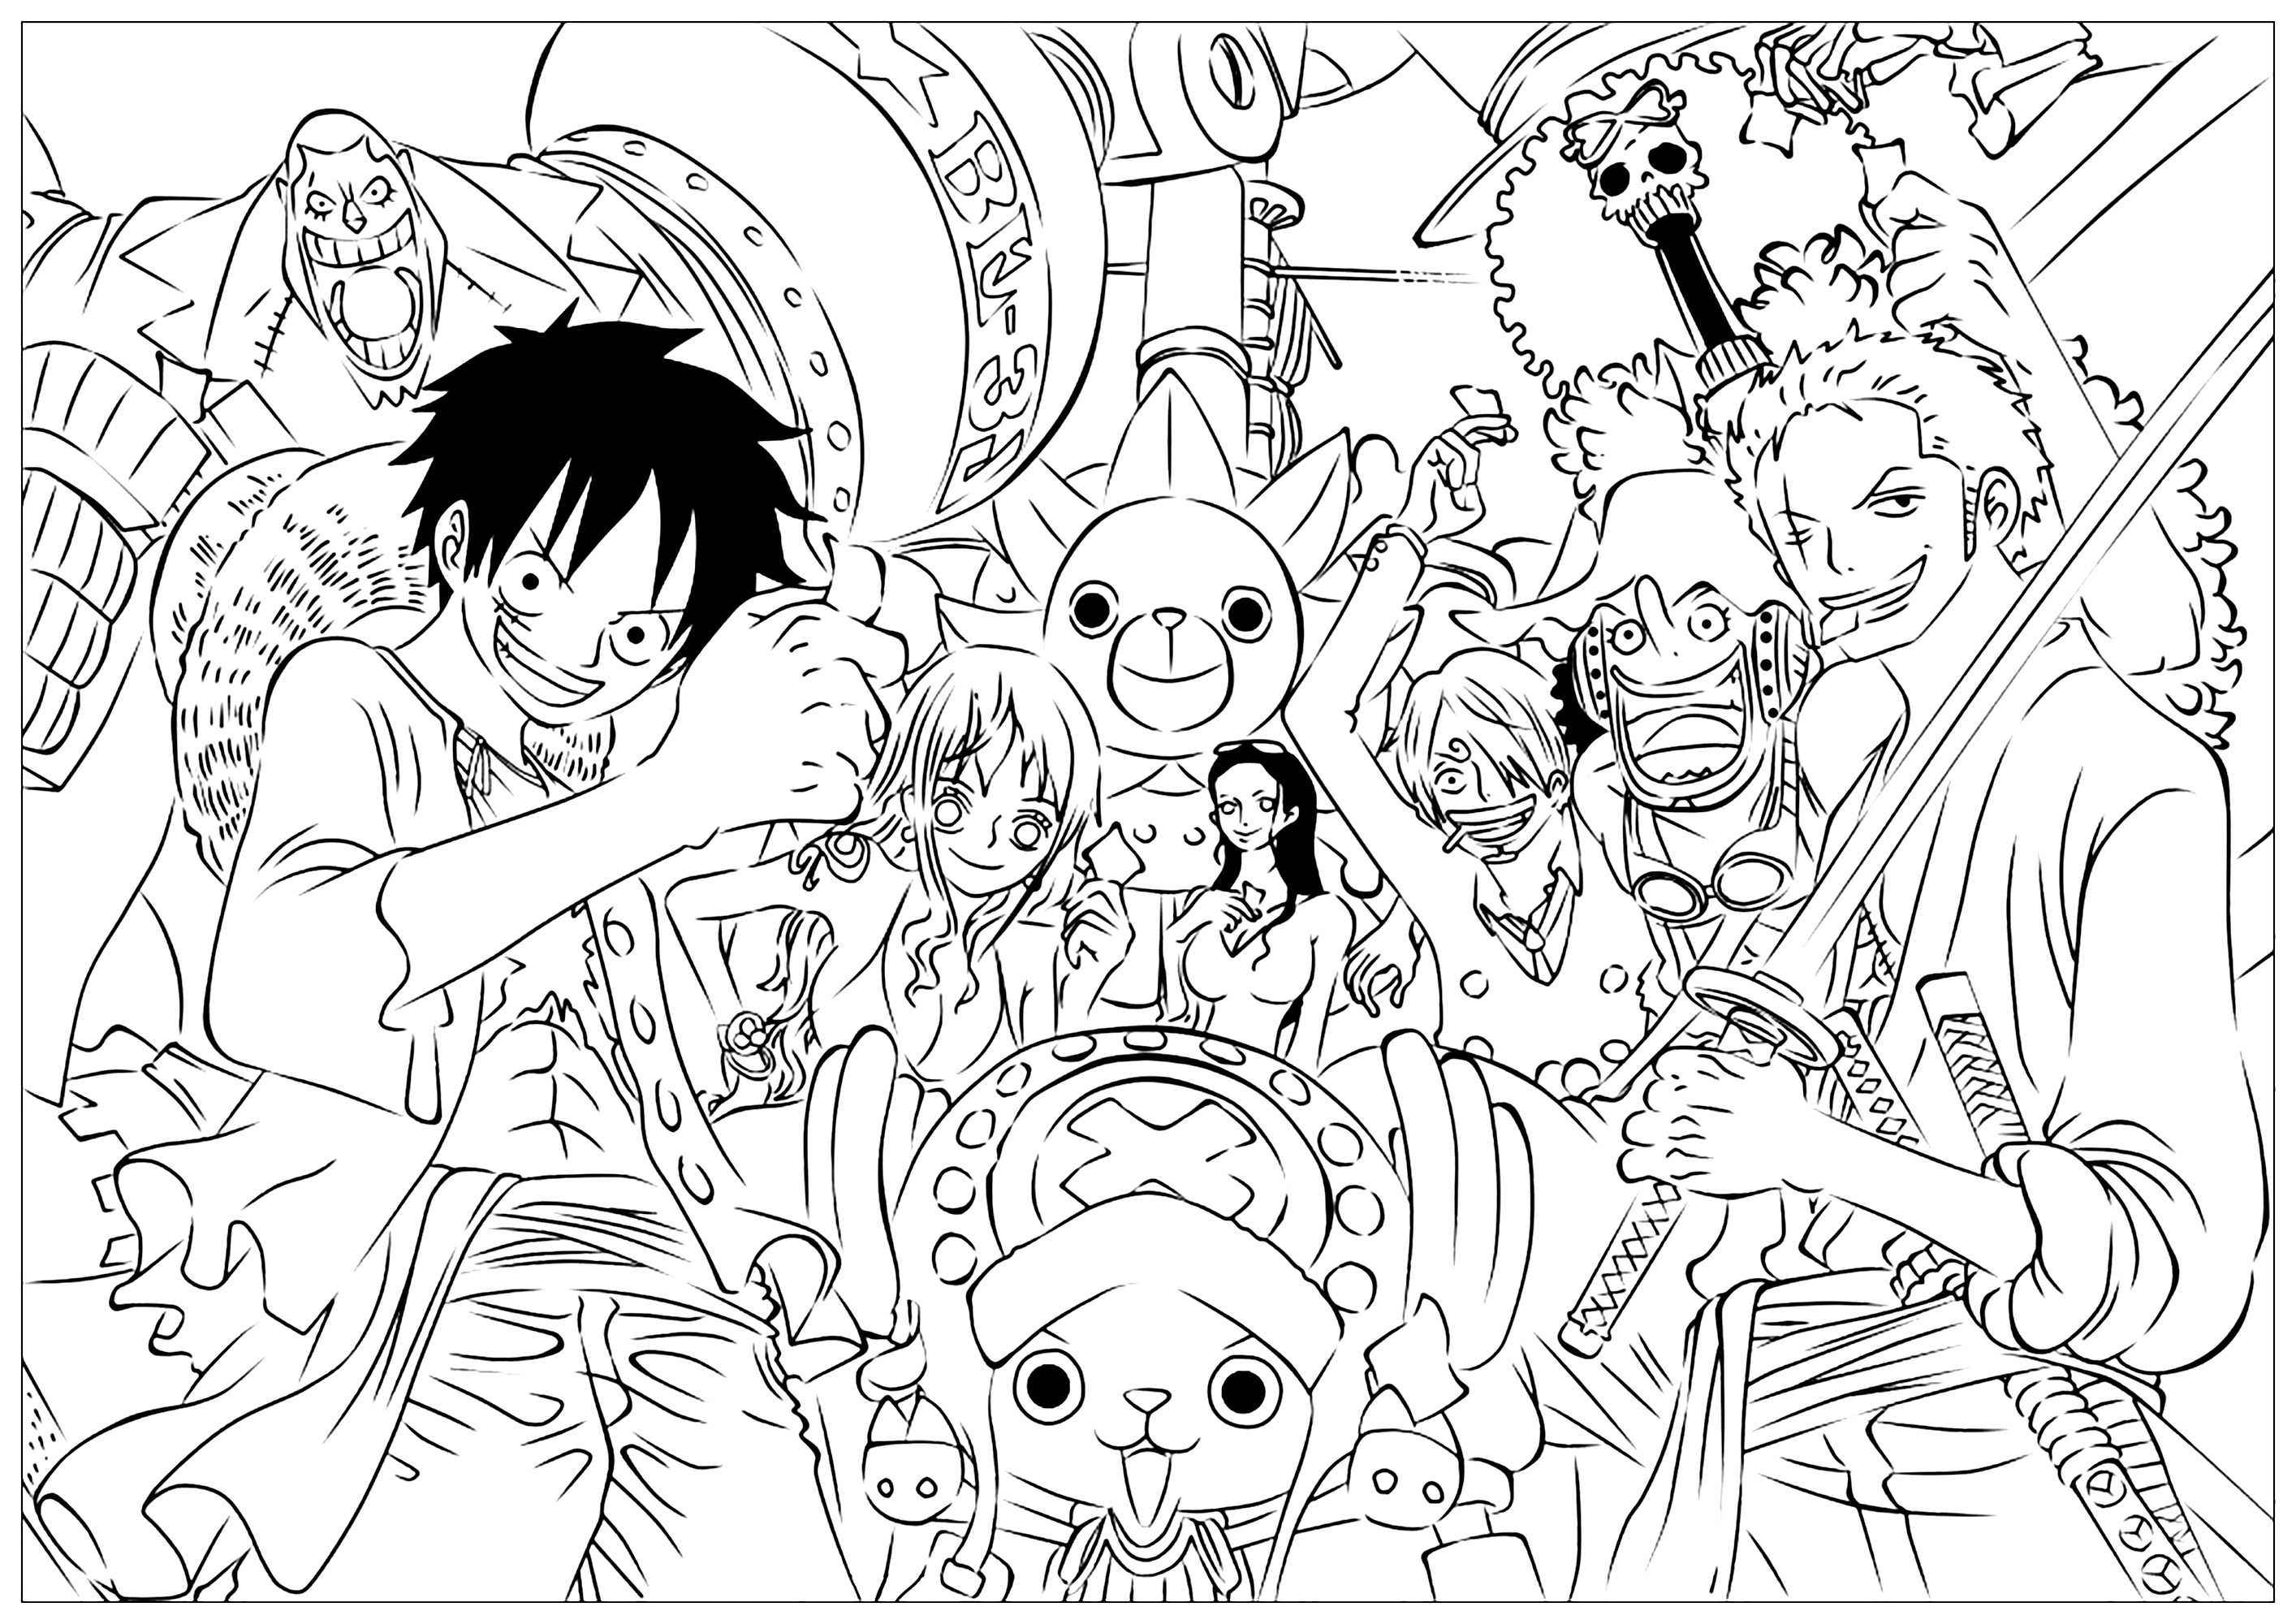 Personaggi interi in un libro da colorare ricco di dettagli. Ecco i principali personaggi di One Piece: Monkey D. Luffy è il leader che vuole diventare il Re dei Pirati. Roronoa Zoro è uno spadaccino a tre lame; Nami, la navigatrice; Usopp, il cecchino e narratore; Sanji, il cuoco; Tony Tony Chopper, il medico delle renne; Nico Robin, l'archeologo; Franky, il falegname cyborg; Brook, lo scheletro musicista; e Jinbei, il karateka uomo pesce. Tutti fanno parte dell'equipaggio di Chapeau de Paille con sogni unici.